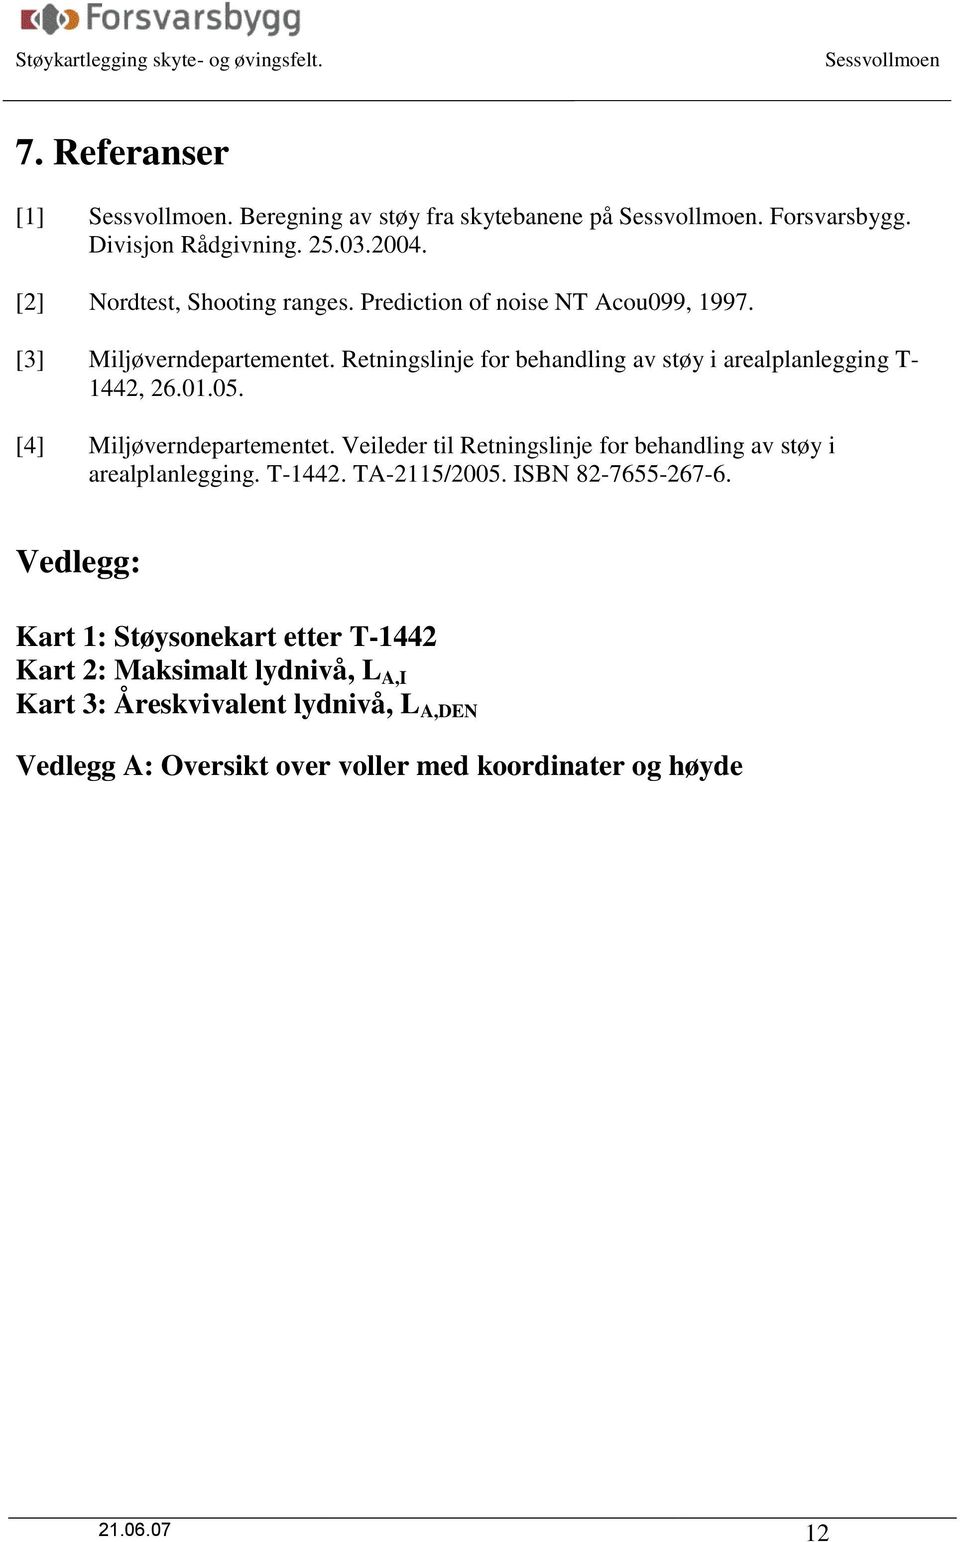 [4] Miljøverndepartementet. Veileder til Retningslinje for behandling av støy i arealplanlegging. T-1442. TA-2115/2005. ISBN 82-7655-267-6.